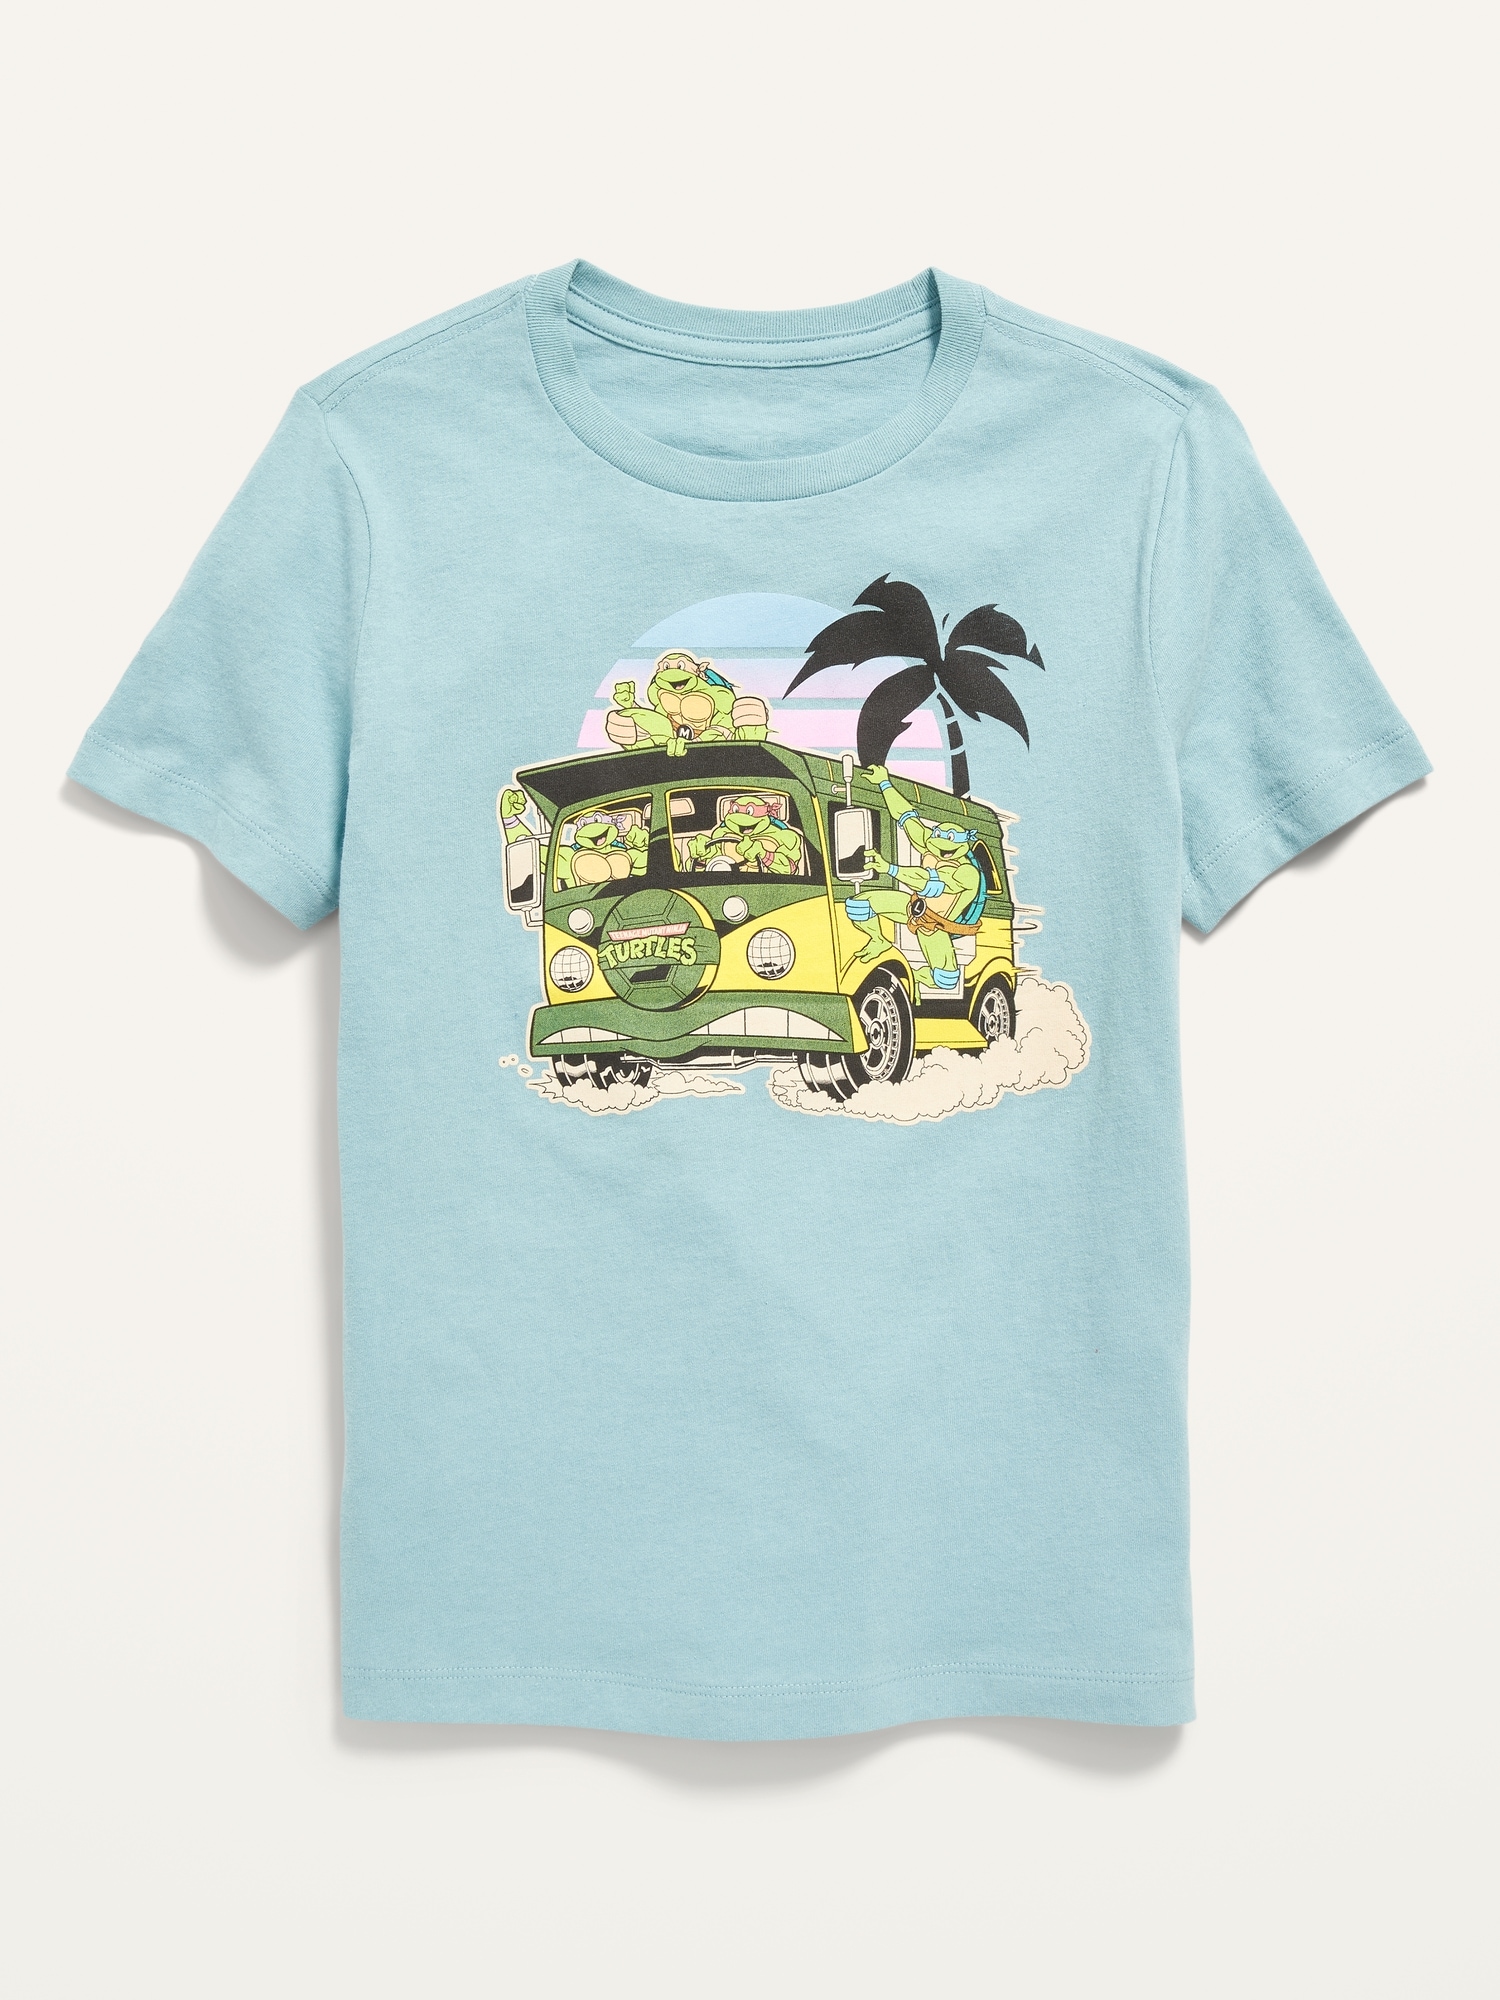  Teenage Mutant Ninja Turtles Kids Short Sleeve T-Shirt